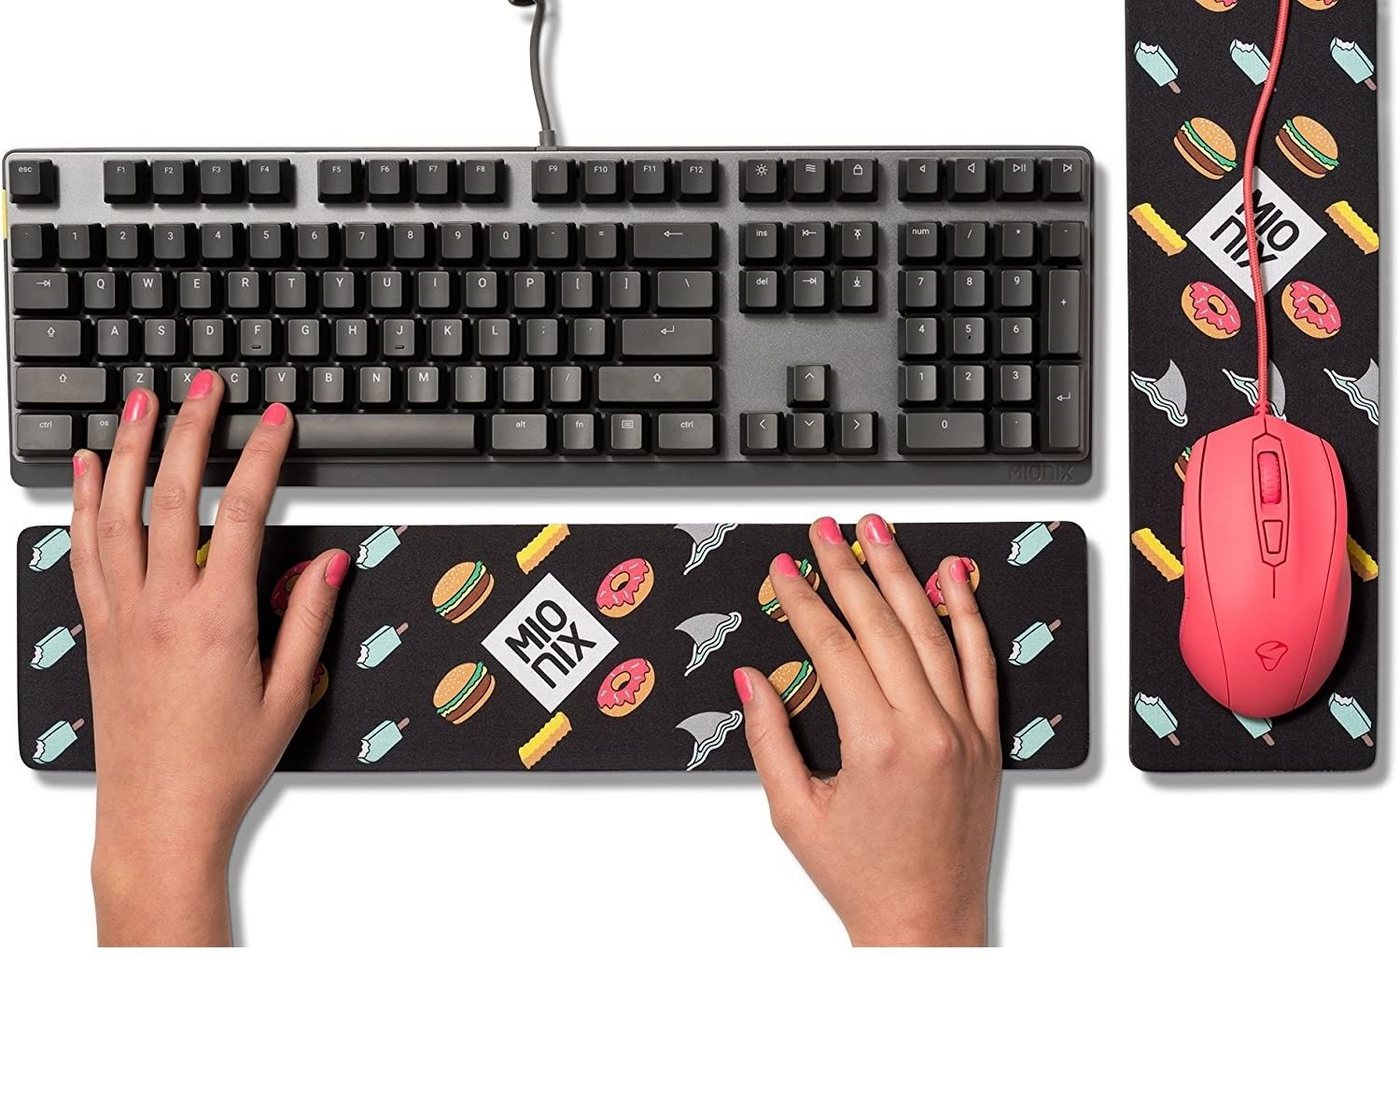 MIONIX Tastatur-Handballenauflage Long Pad Black Wrist-Rest Handballen-Auflage, Handgelenkauflage, PC Laptop Tastatur, Maus-Pad, Frisches Design-Motiv von MIONIX